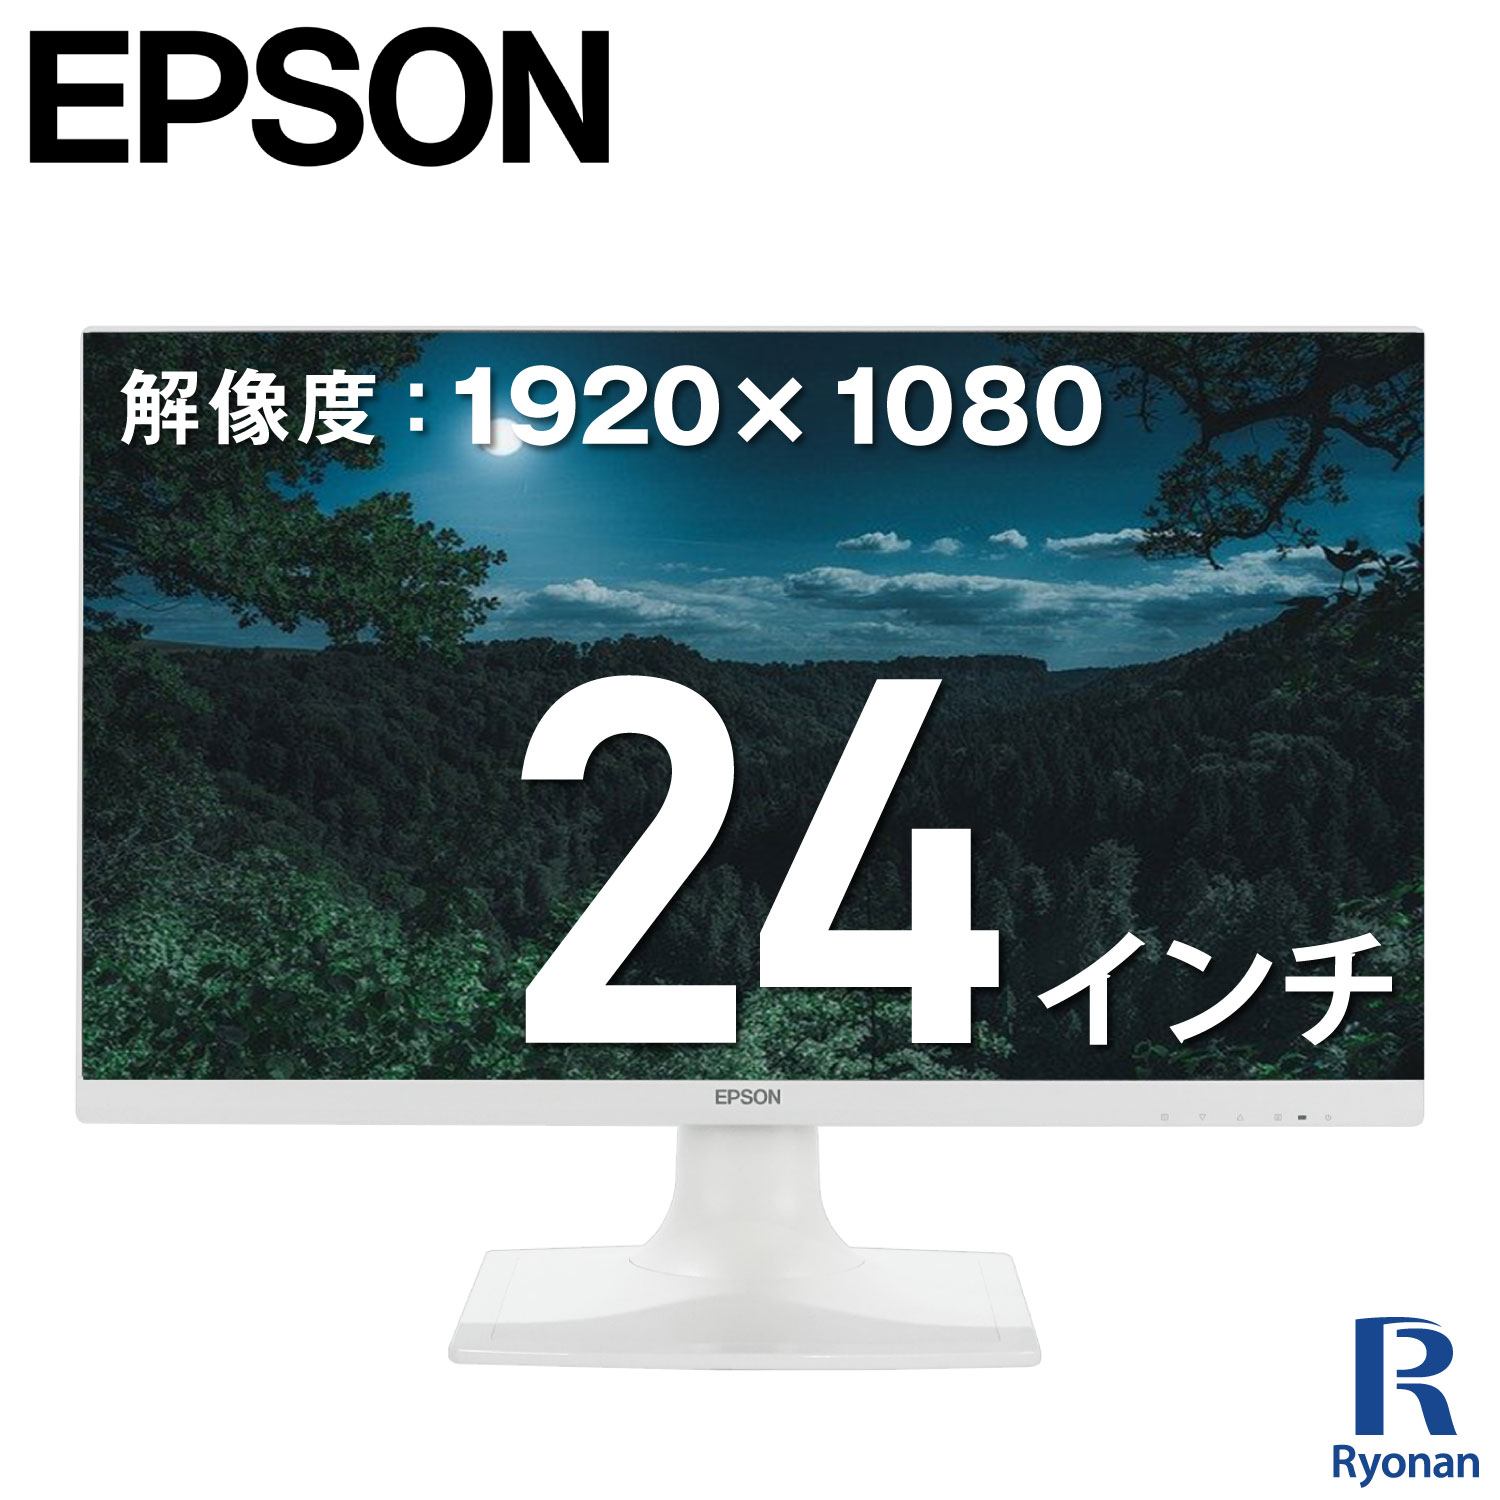 EPSON LD24W85L 液晶モニター 24インチ ワイド 液晶 ノングレア 1920×1080 フルHD 非光沢 VESAマウント チルト機能 モニター 単体 スピーカー内蔵 HDMI VGA端子 DVI-D端子 ディスプレイ 中古ディスプレイ 中古モニター